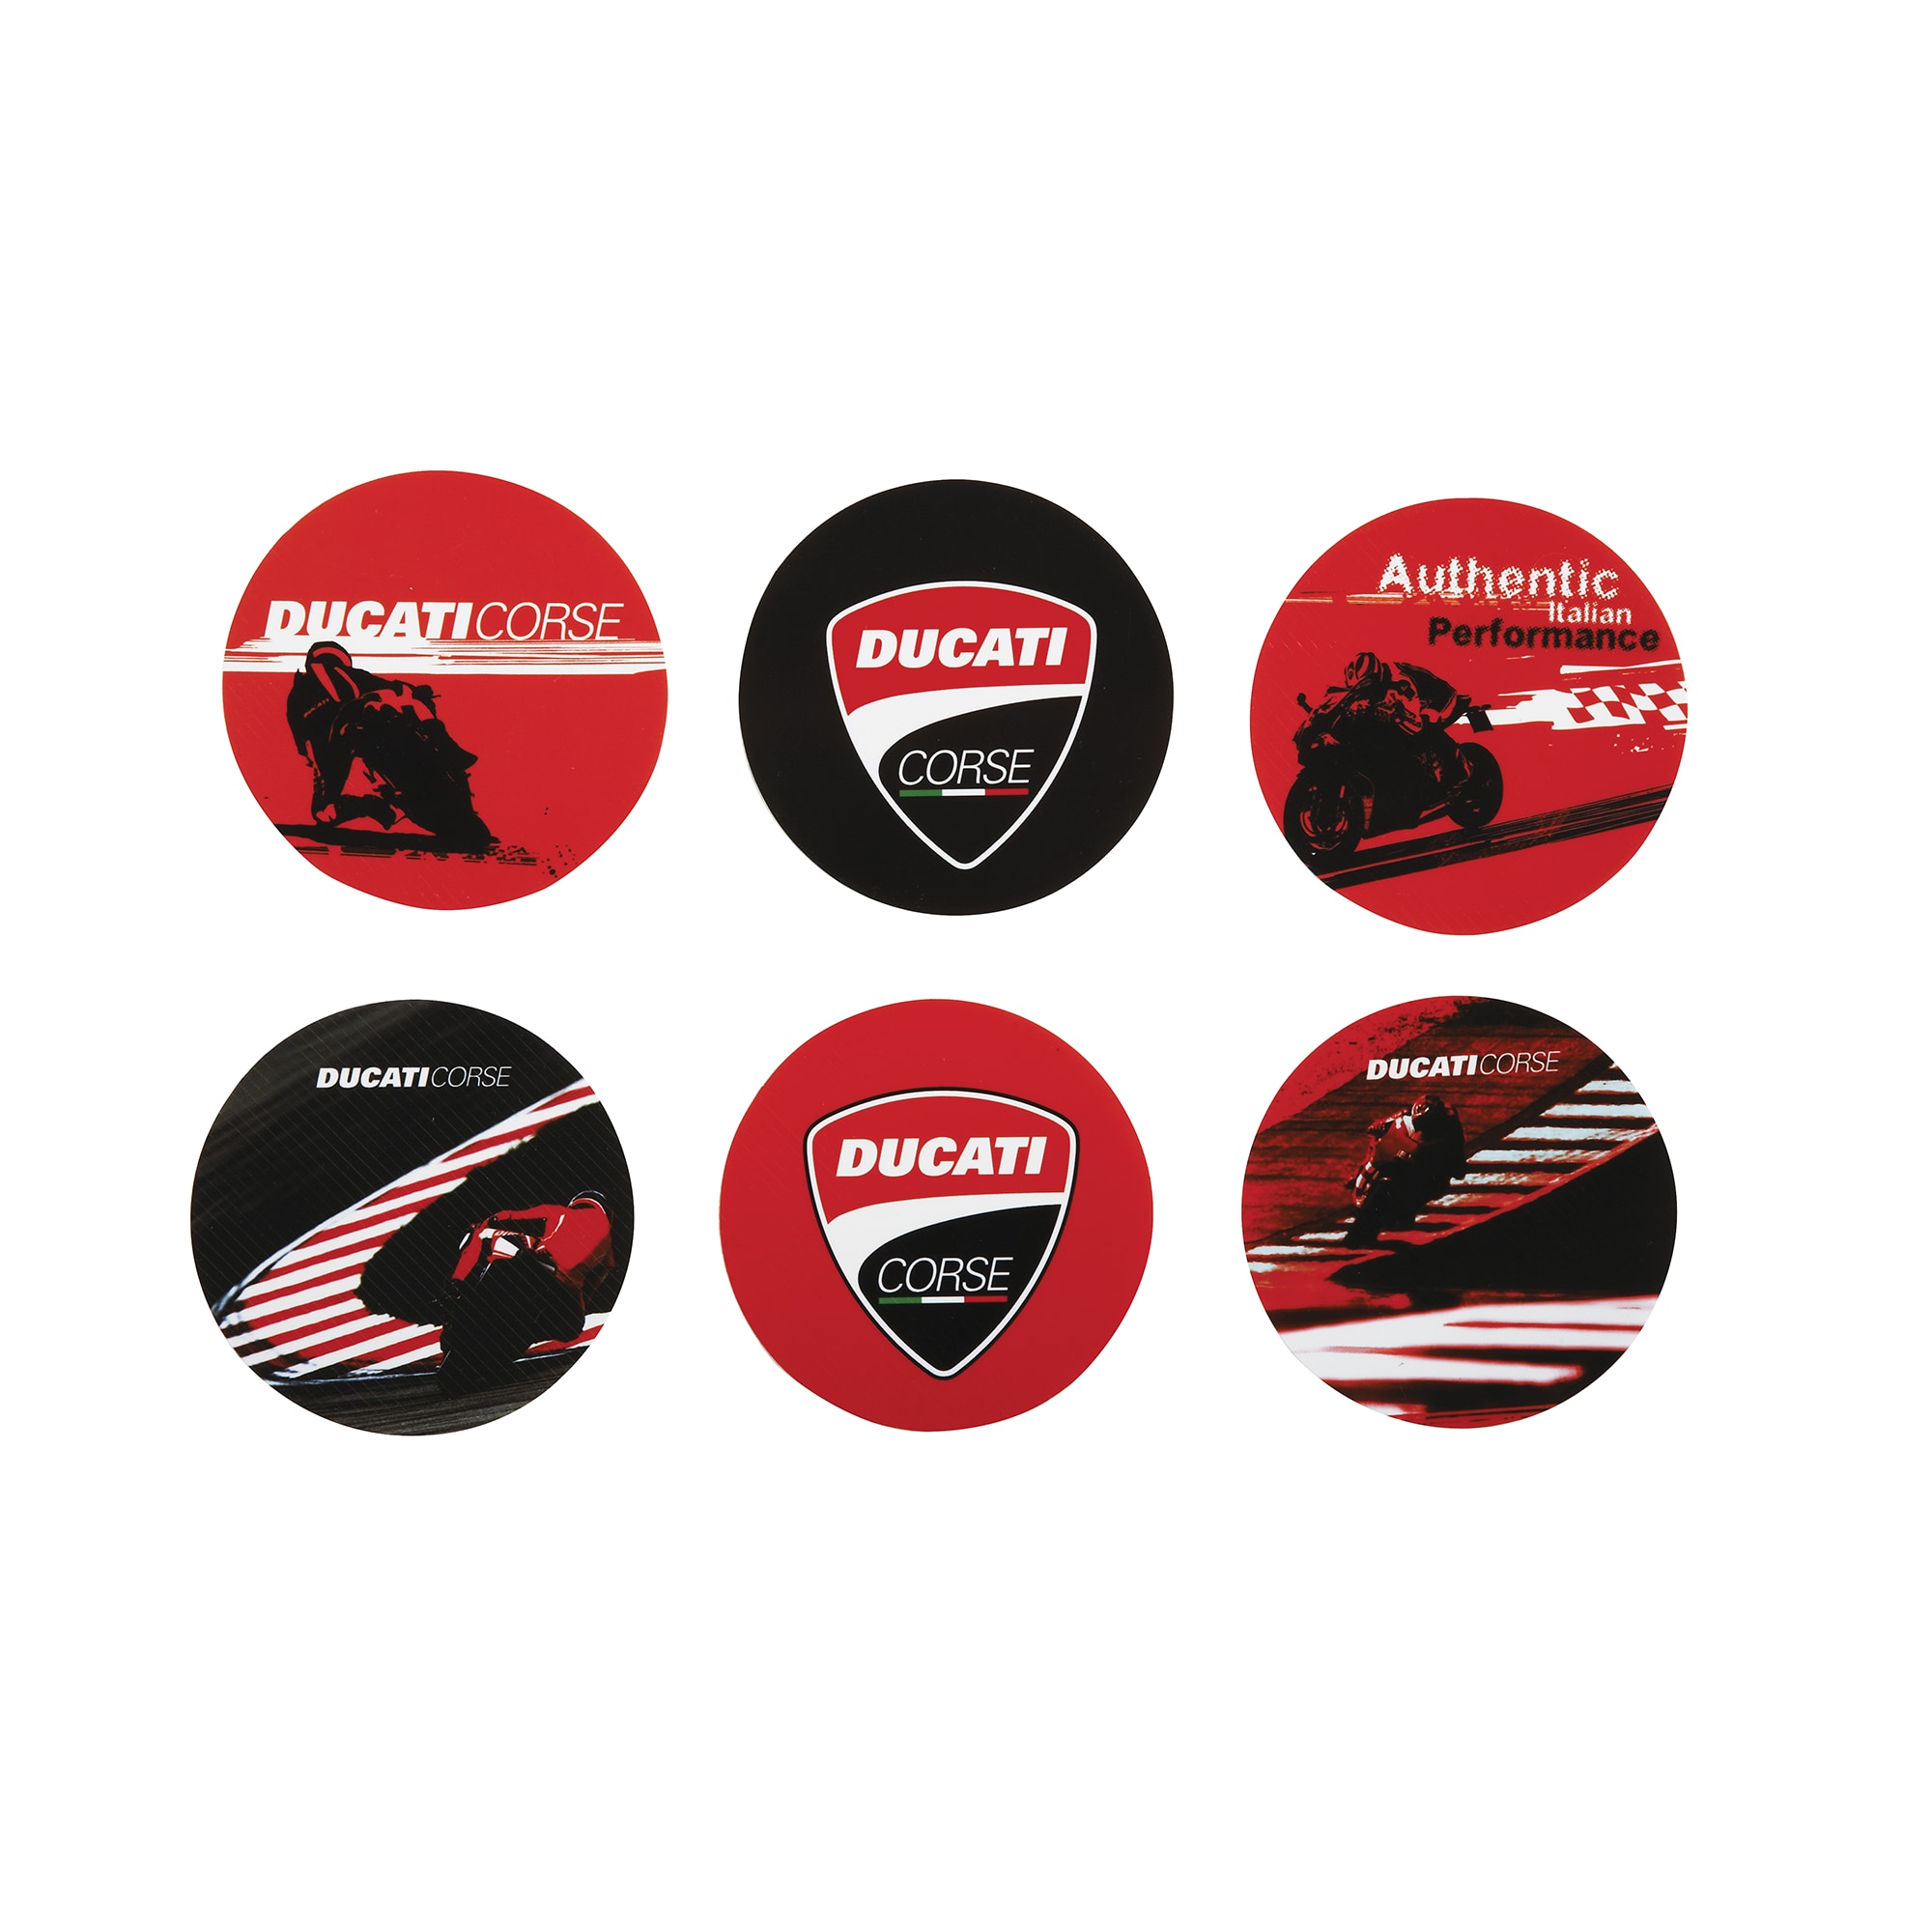 Ducati Corse kitchen - Drink coasters